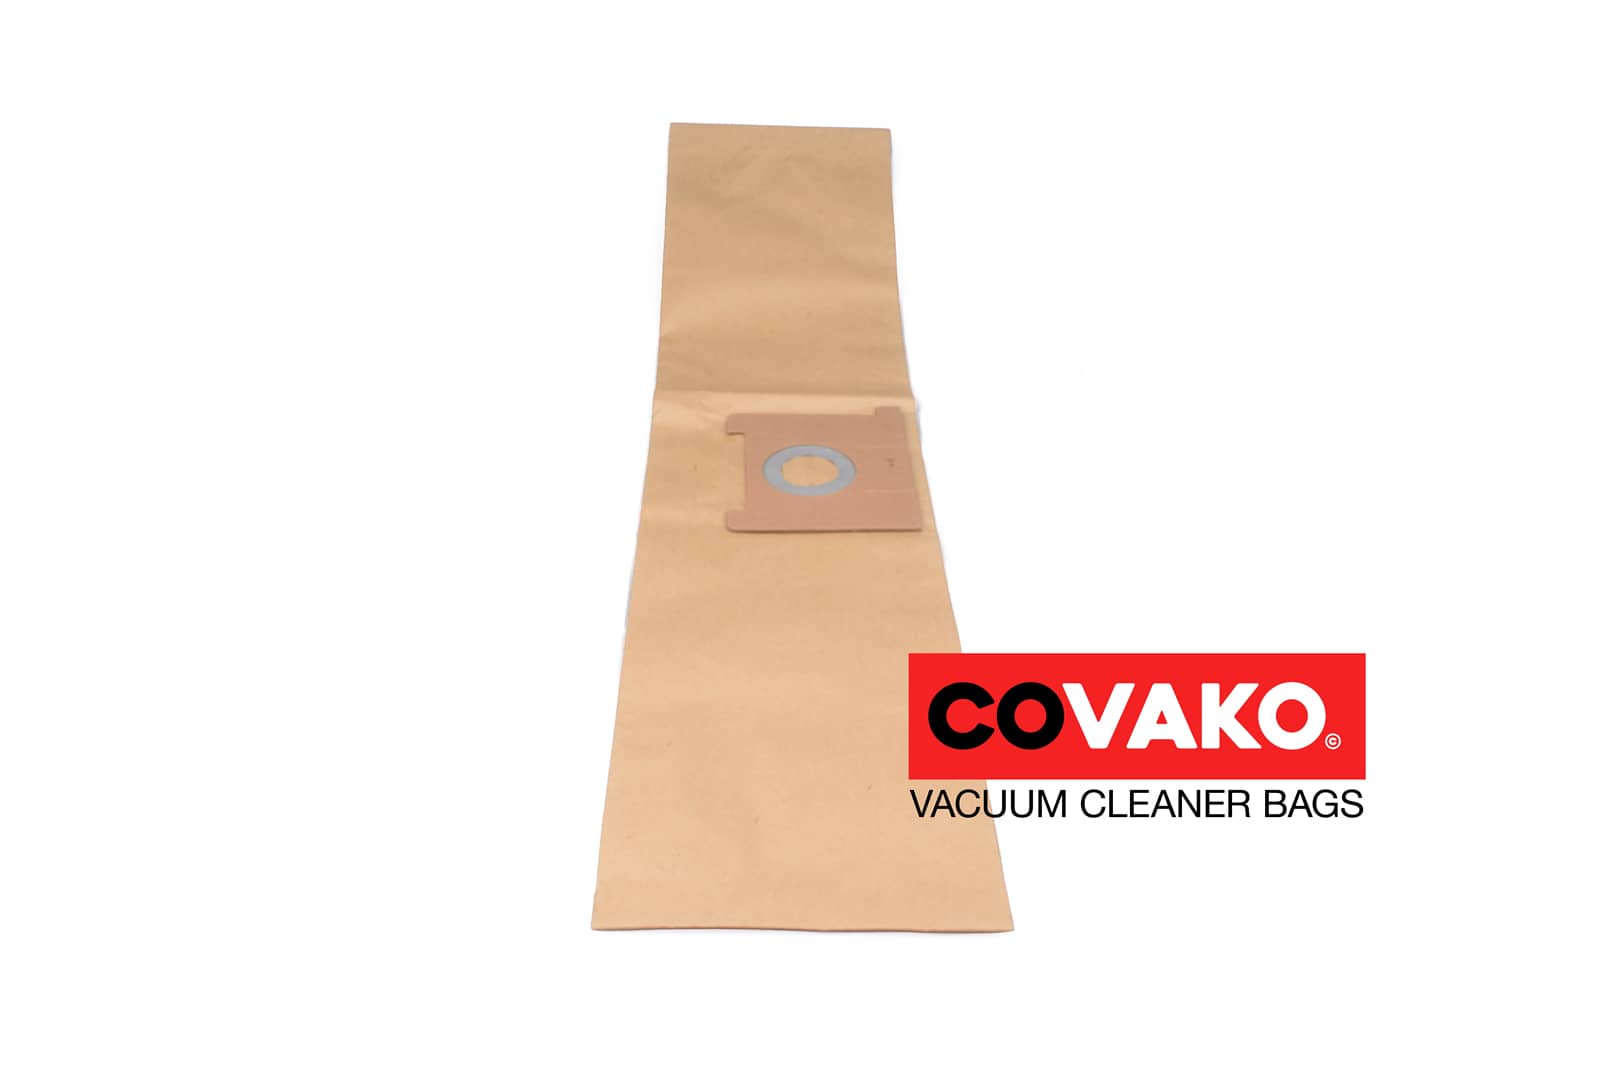 I-vac flexi 9 / Paper - I-vac vacuum cleaner bags